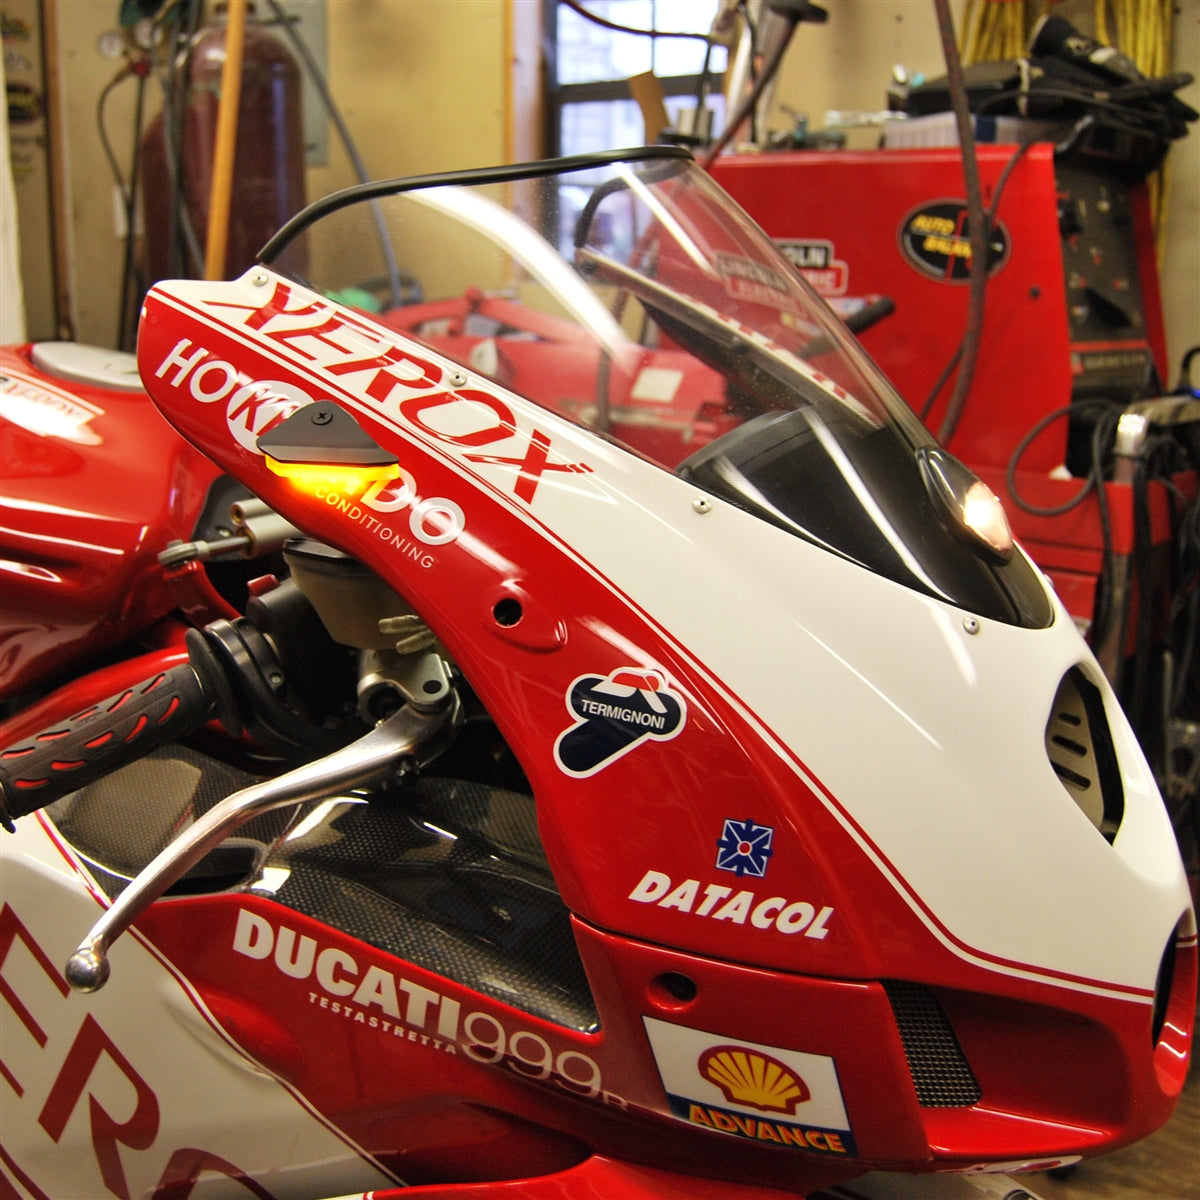 Ducati 999 Mirror Block Off Turn Signals